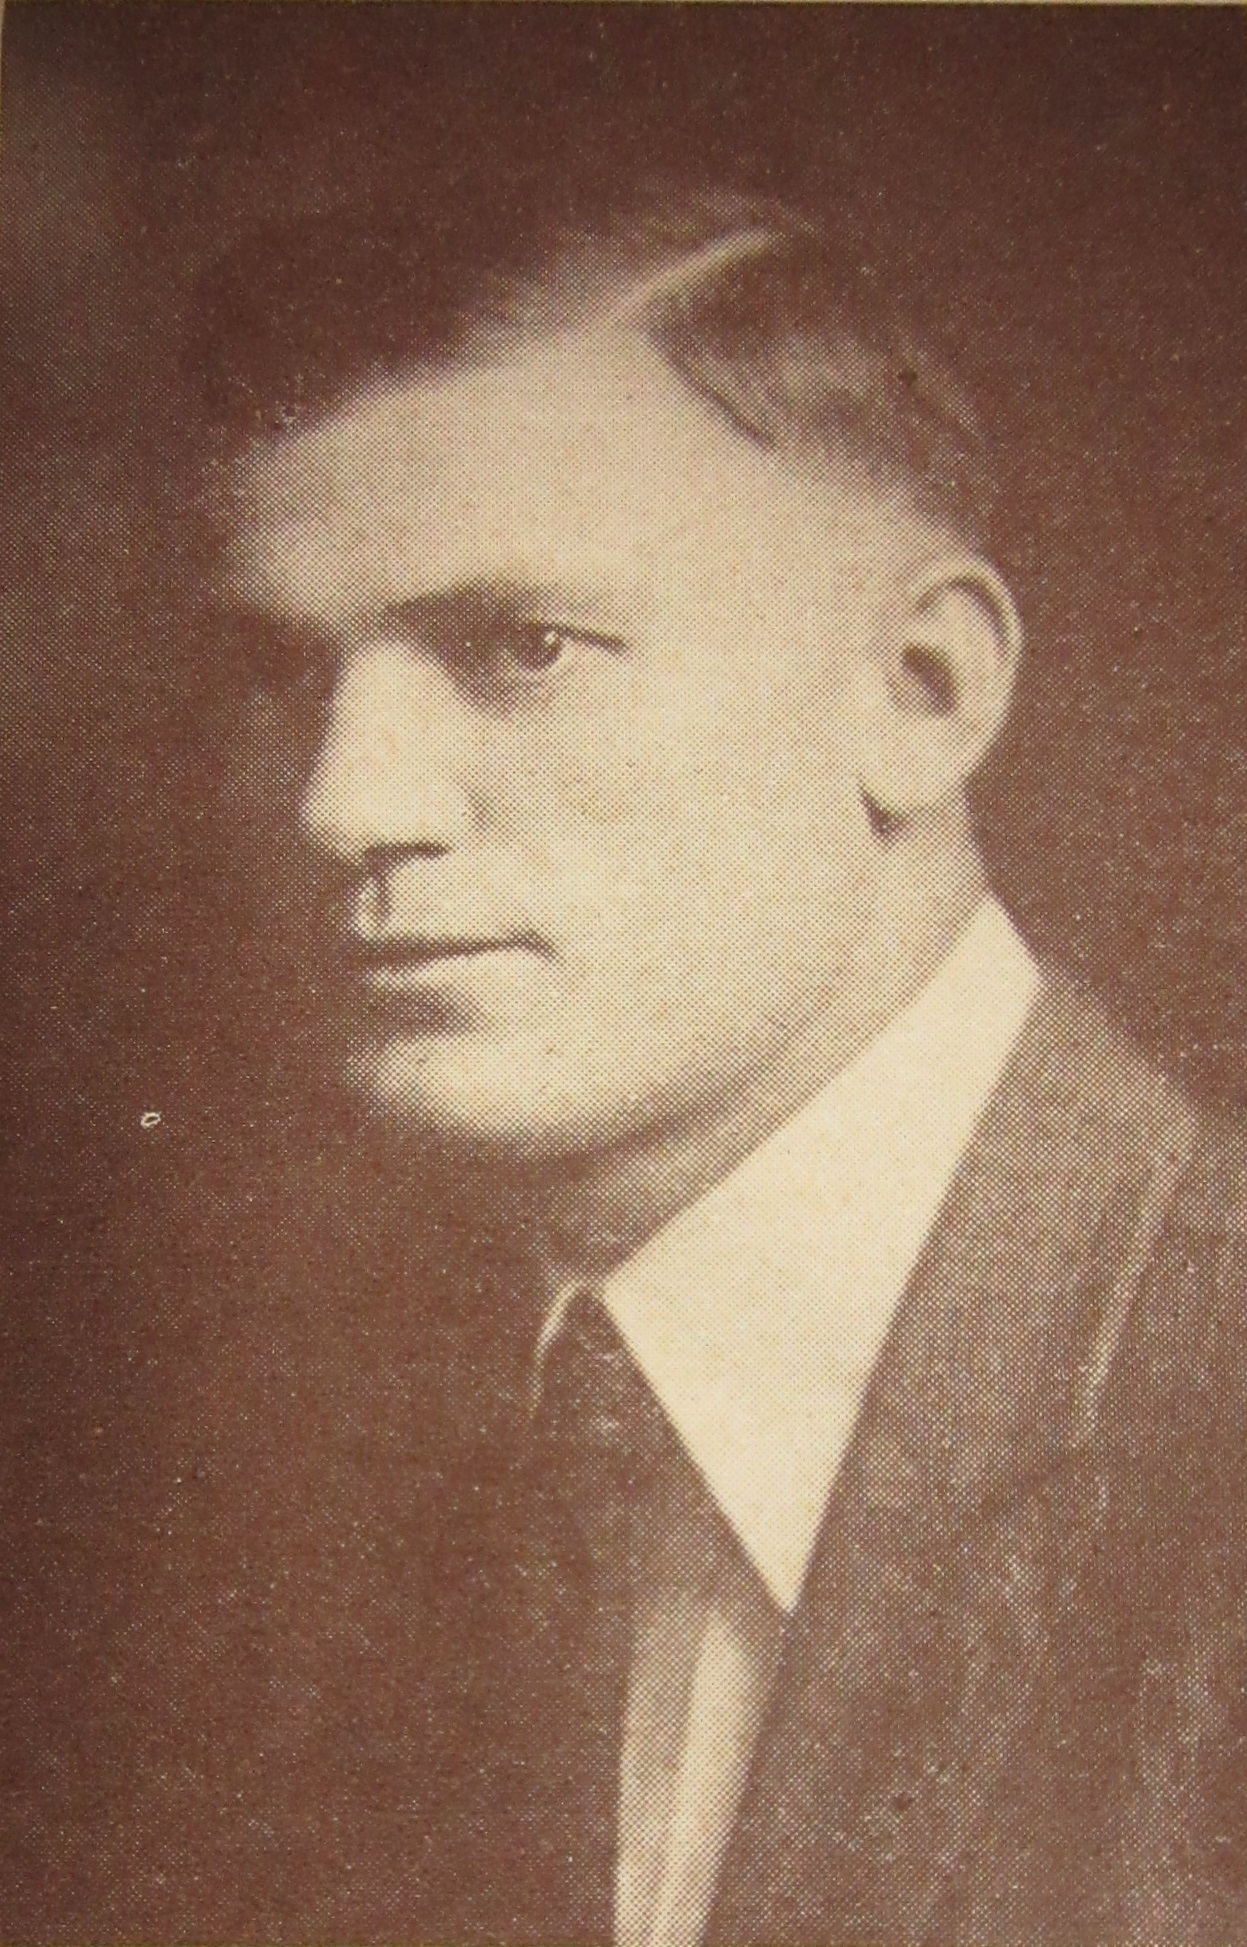 Harold A. Trevillian